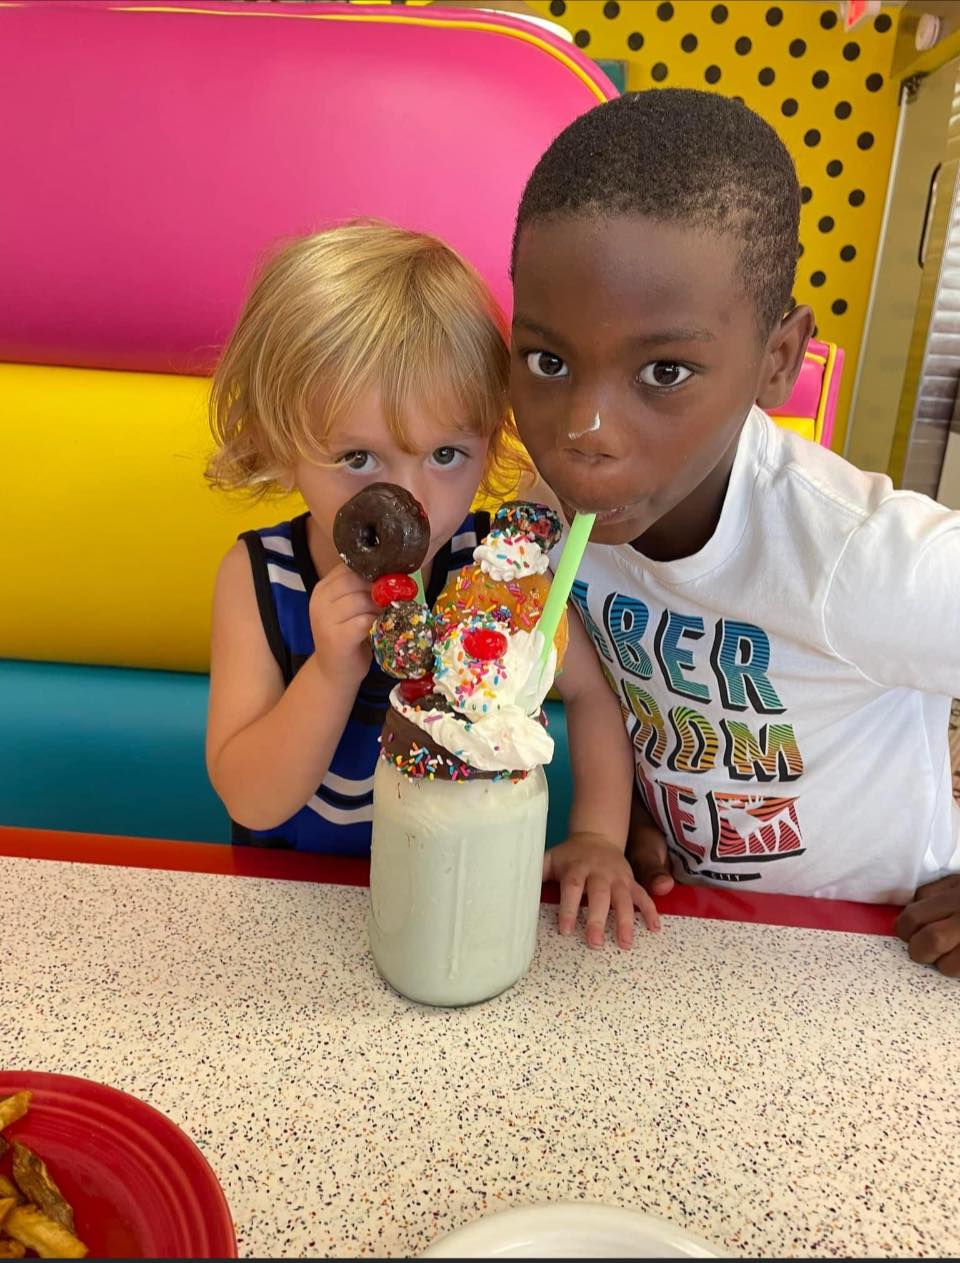 Two boys sharing a milkshake